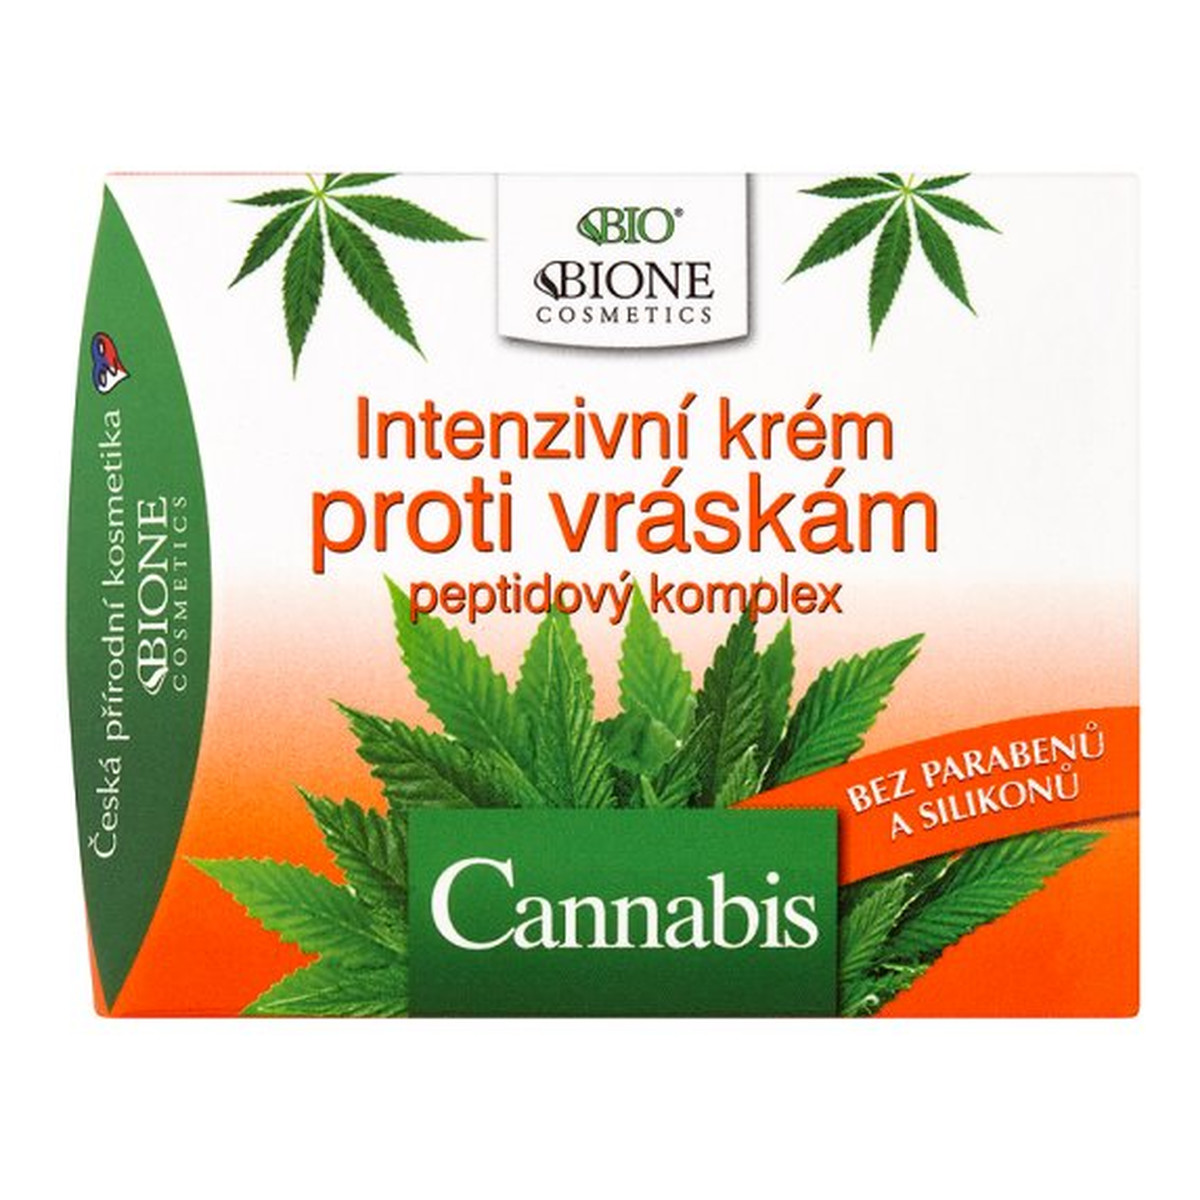 Bione Cannabis intensywny krem przeciwzmarszczkowy 51ml